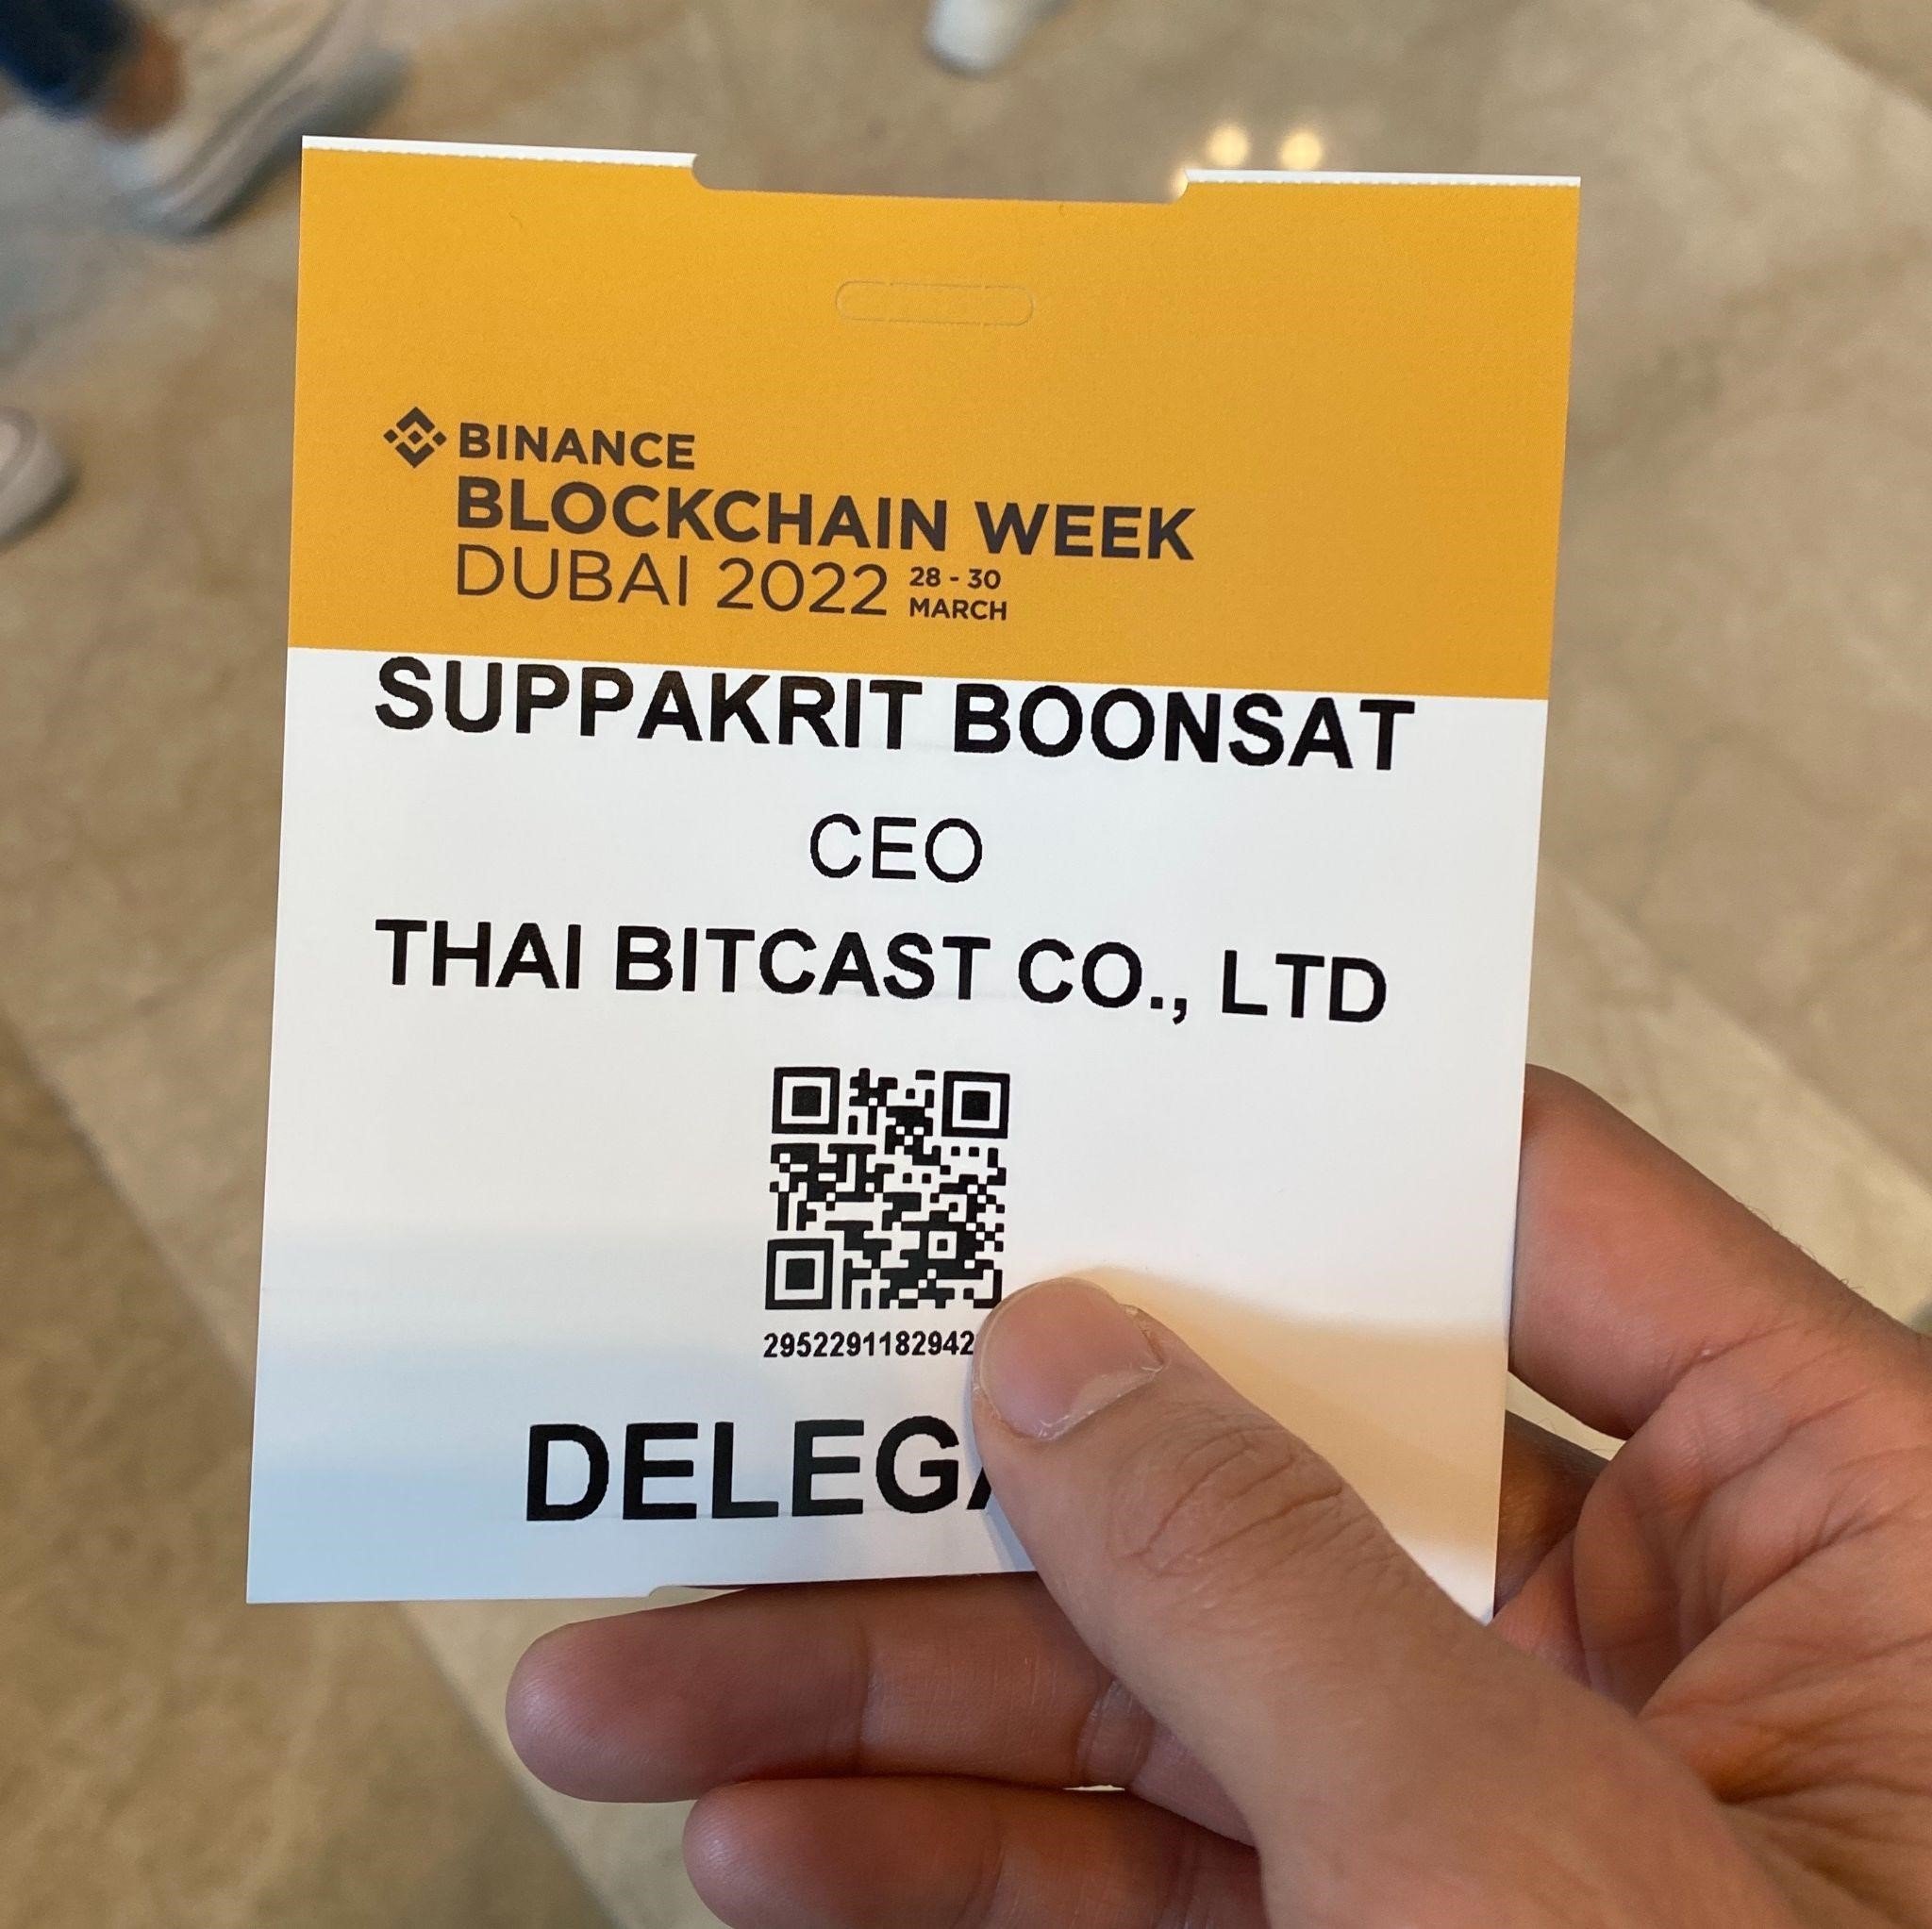 Binance Blockchain Week Dubai 2022